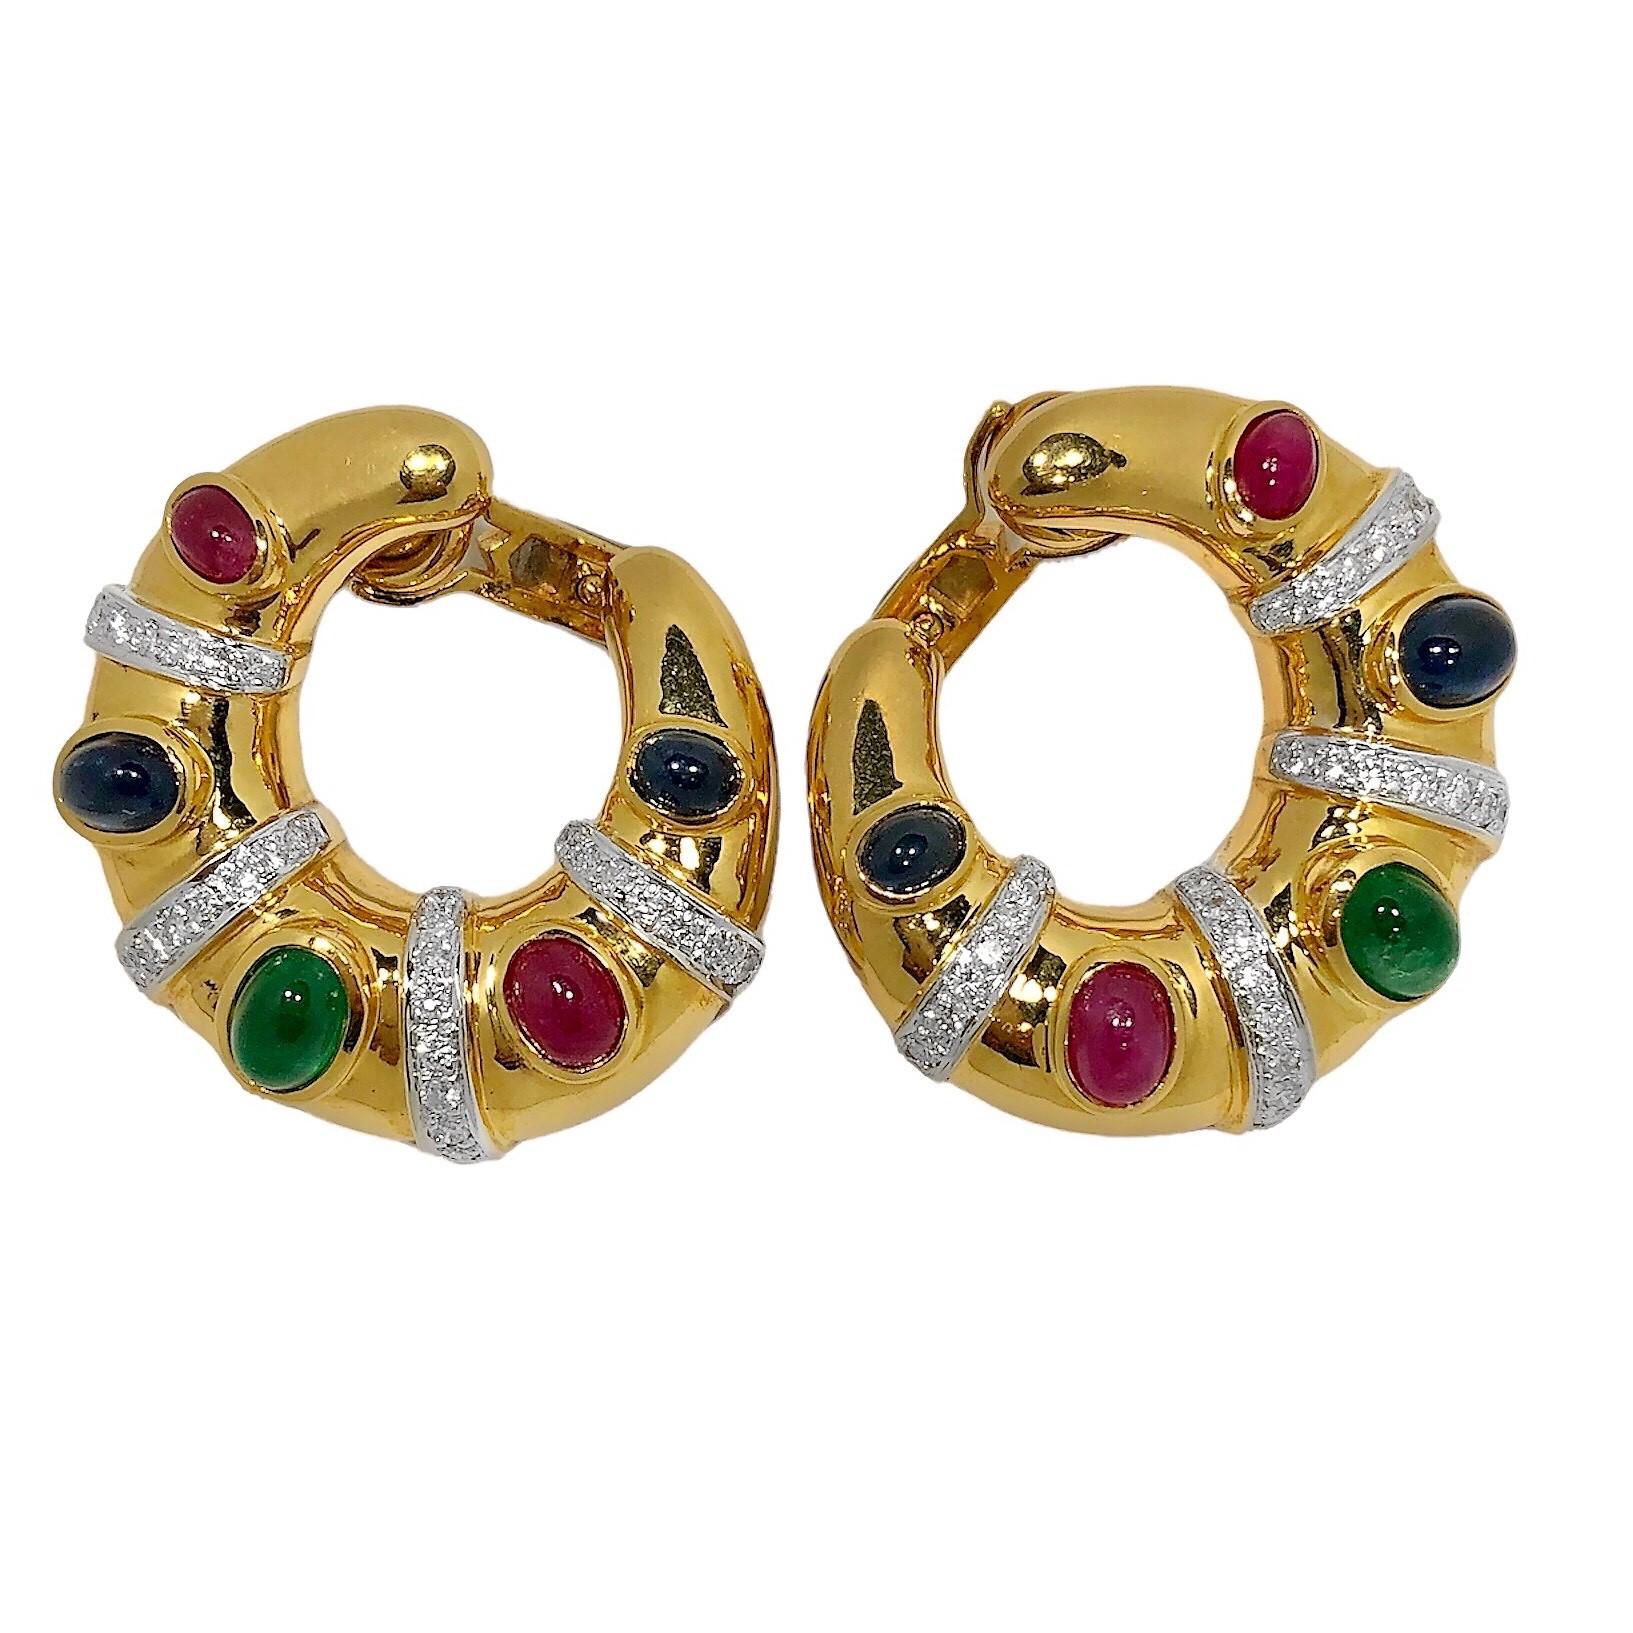 Cette paire d'anneaux vintage en or jaune 18 carats est ornée de cinq pierres cabochons : émeraudes, rubis et saphirs, qui ont été serties sur la lunette
sont séparées par des bandes de rhodium de diamants taille brillant. Le poids total